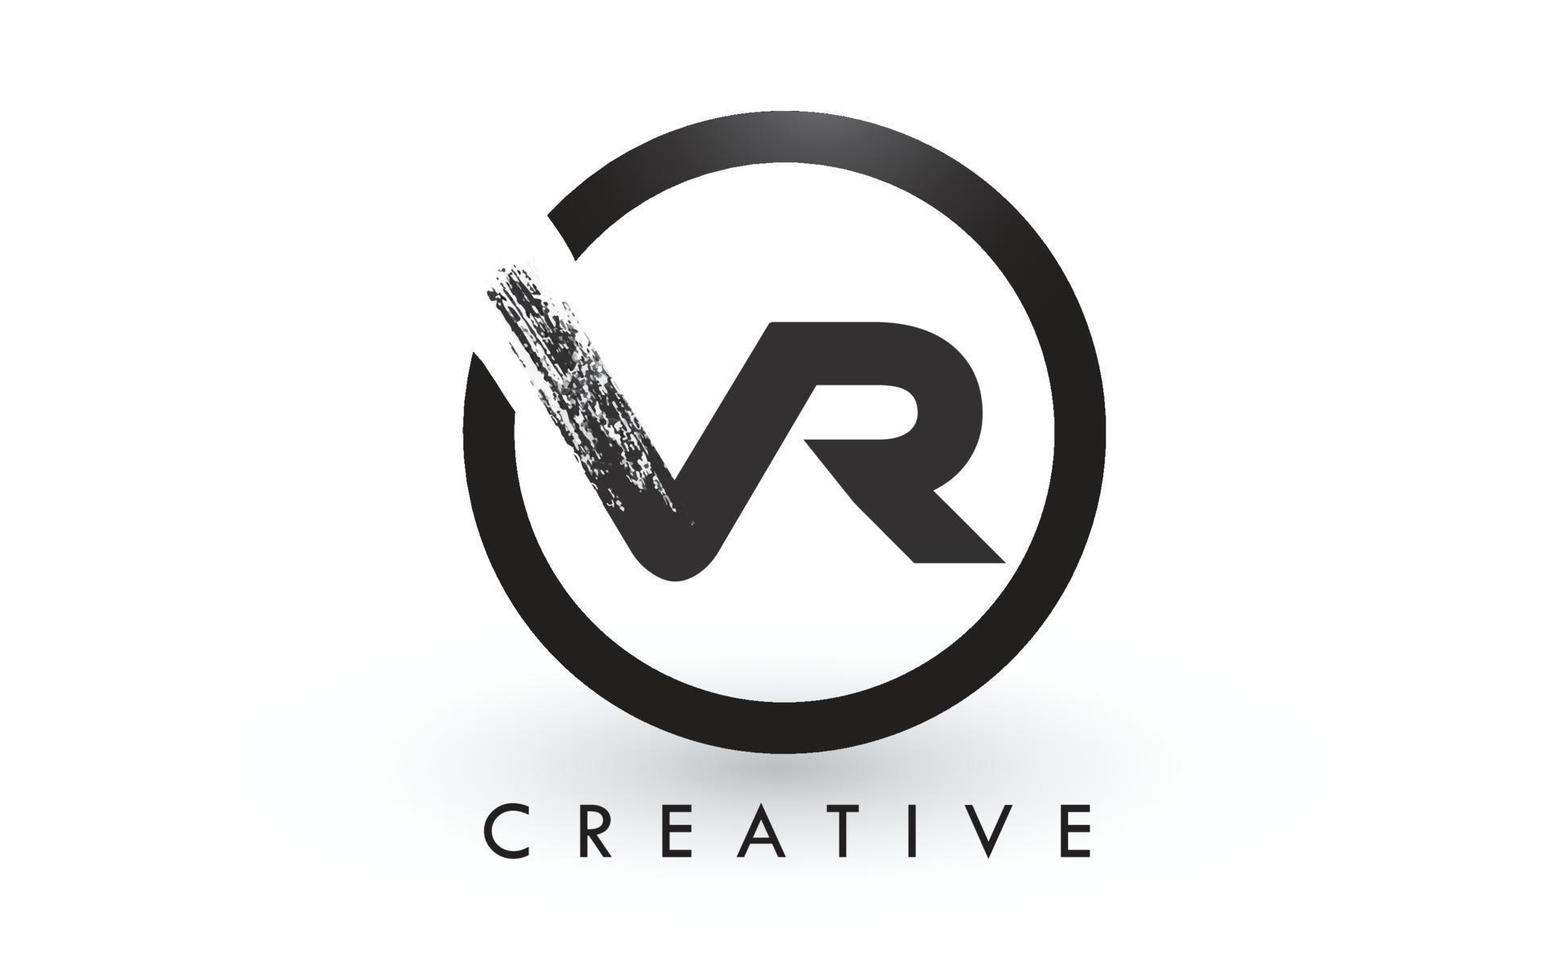 disegno del logo della lettera di pennello vr. logo icona lettere spazzolate creative. vettore